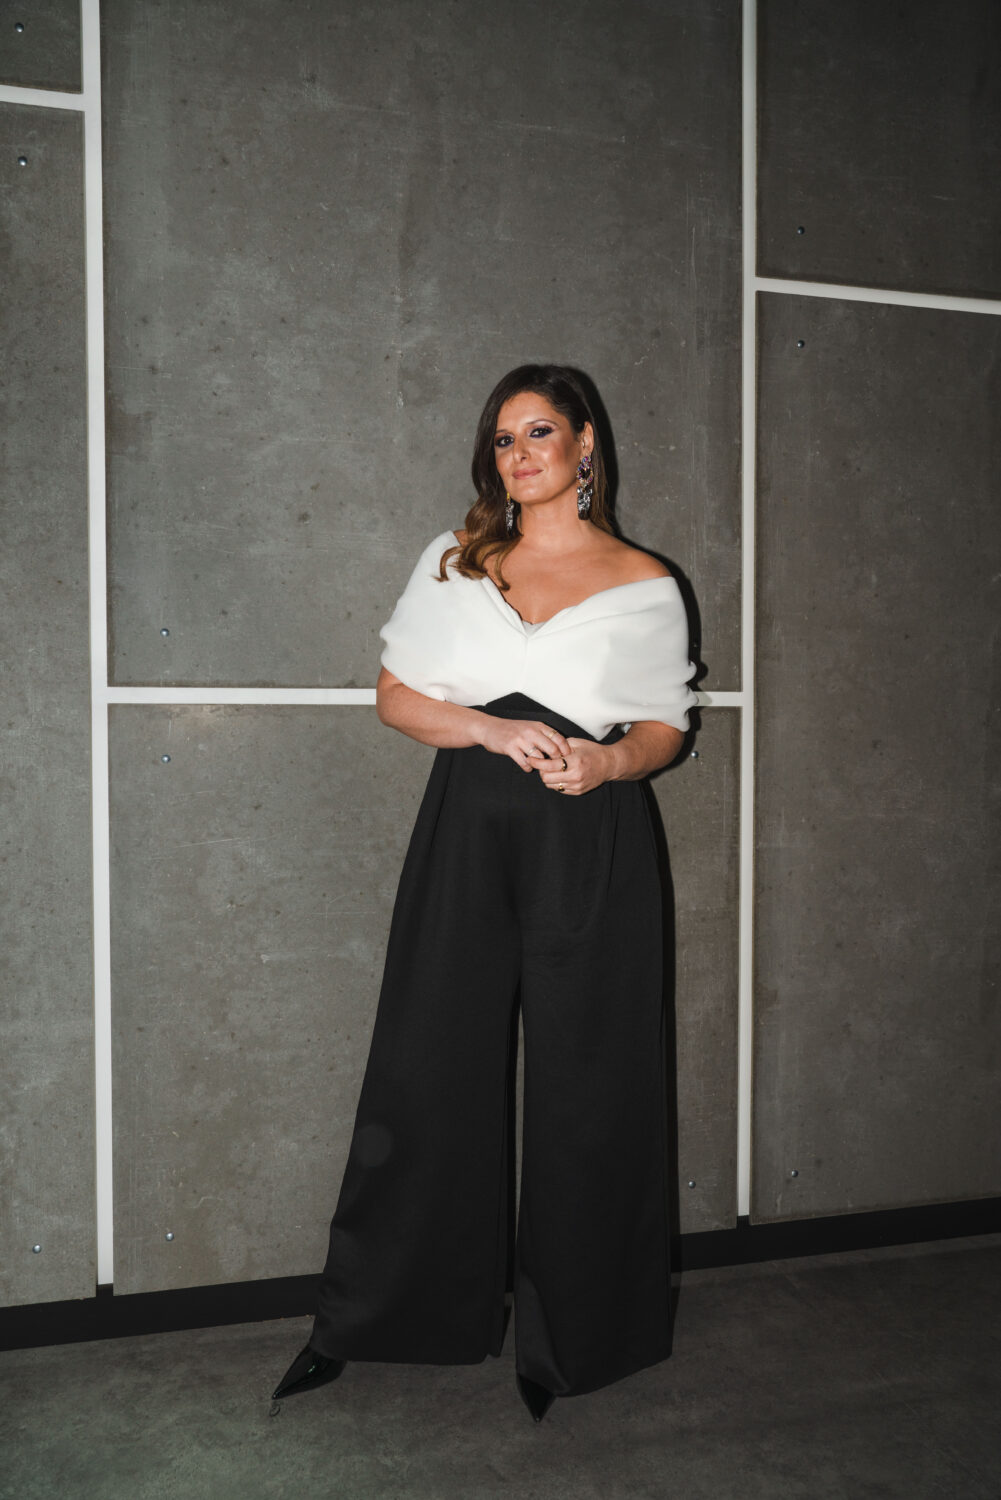 Maria Botelho Moniz encanta com vestido bicolor em gala da &#8216;Ex-periência&#8217;